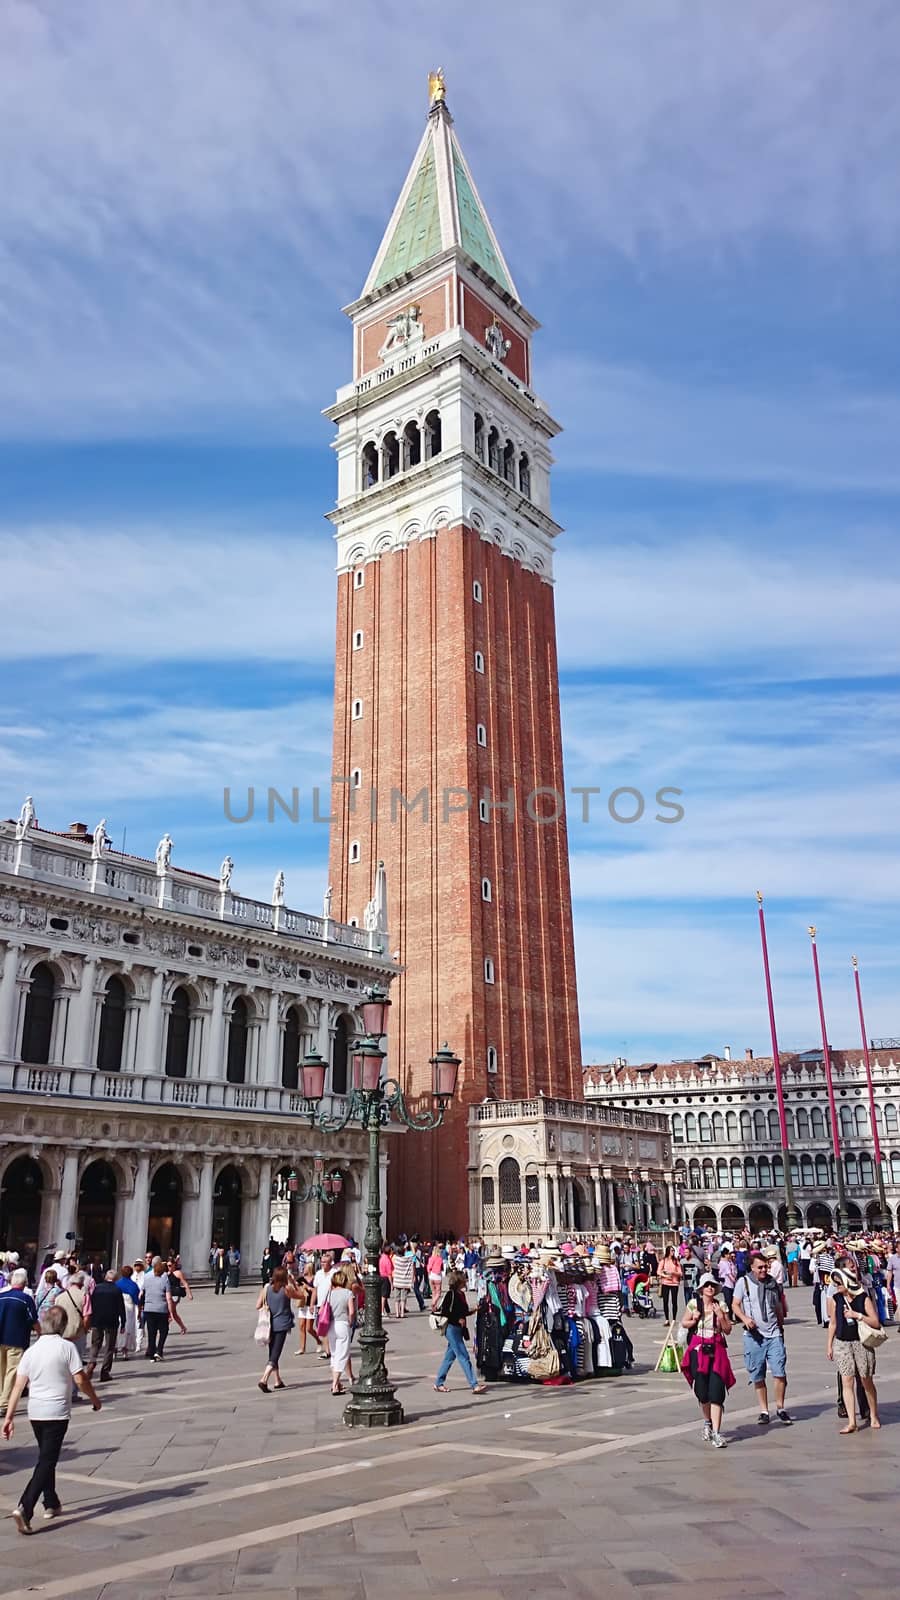 Campanile in Piazza San Marco in Venice, Italy by Brigida_Soriano